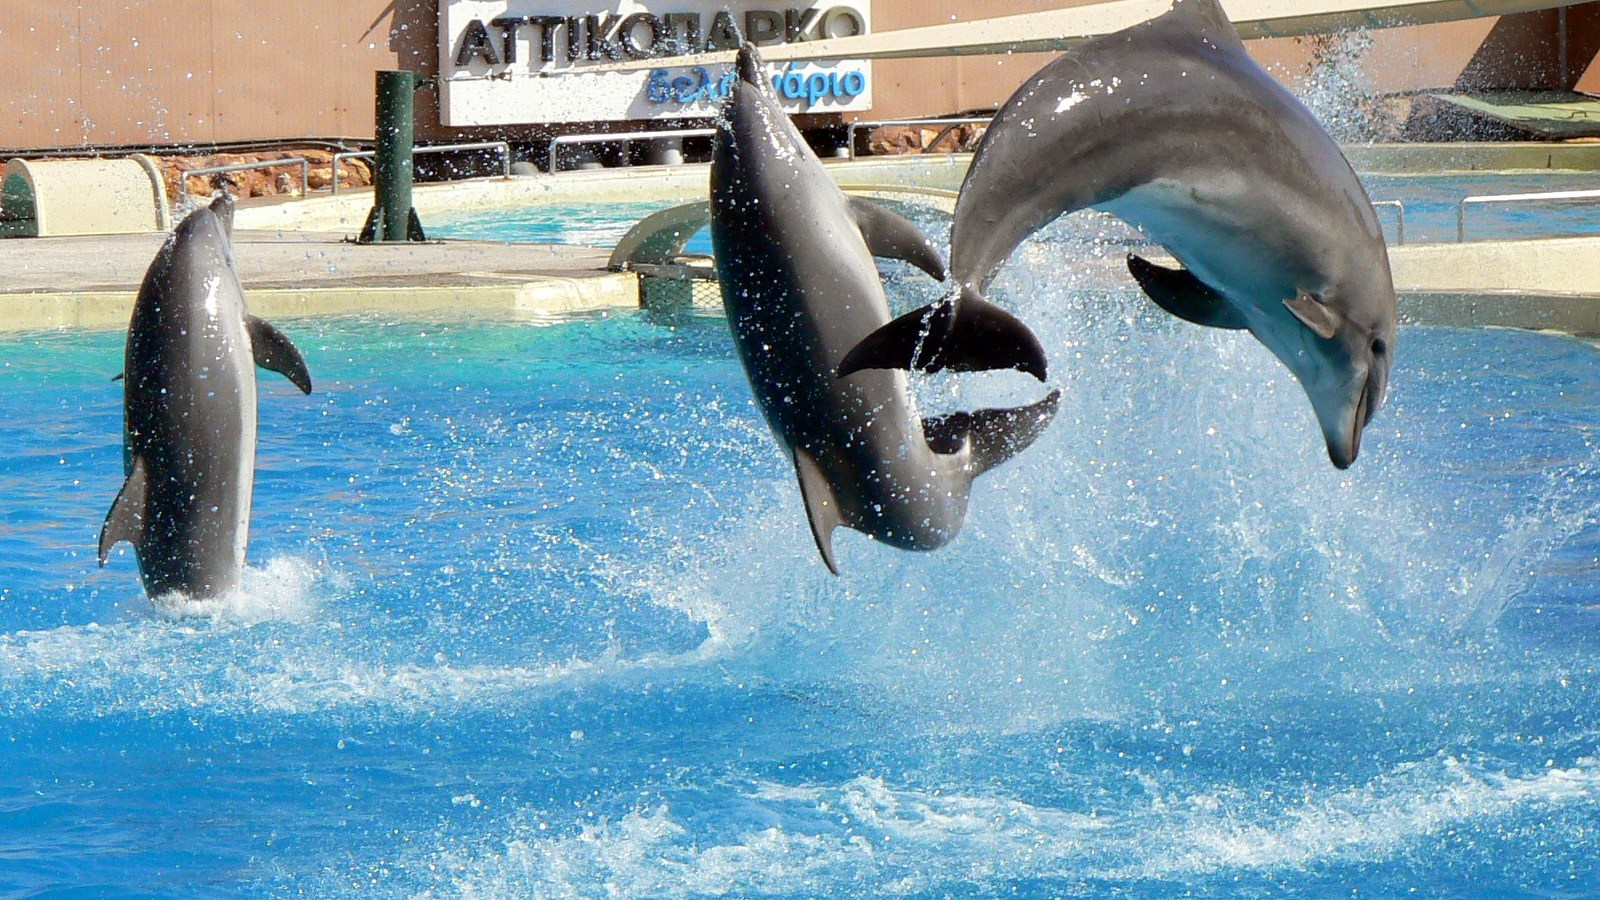 Μήνυση του Prowal κατά του Αττικού Πάρκου για εγκληματική συμπεριφορά στα δελφίνια